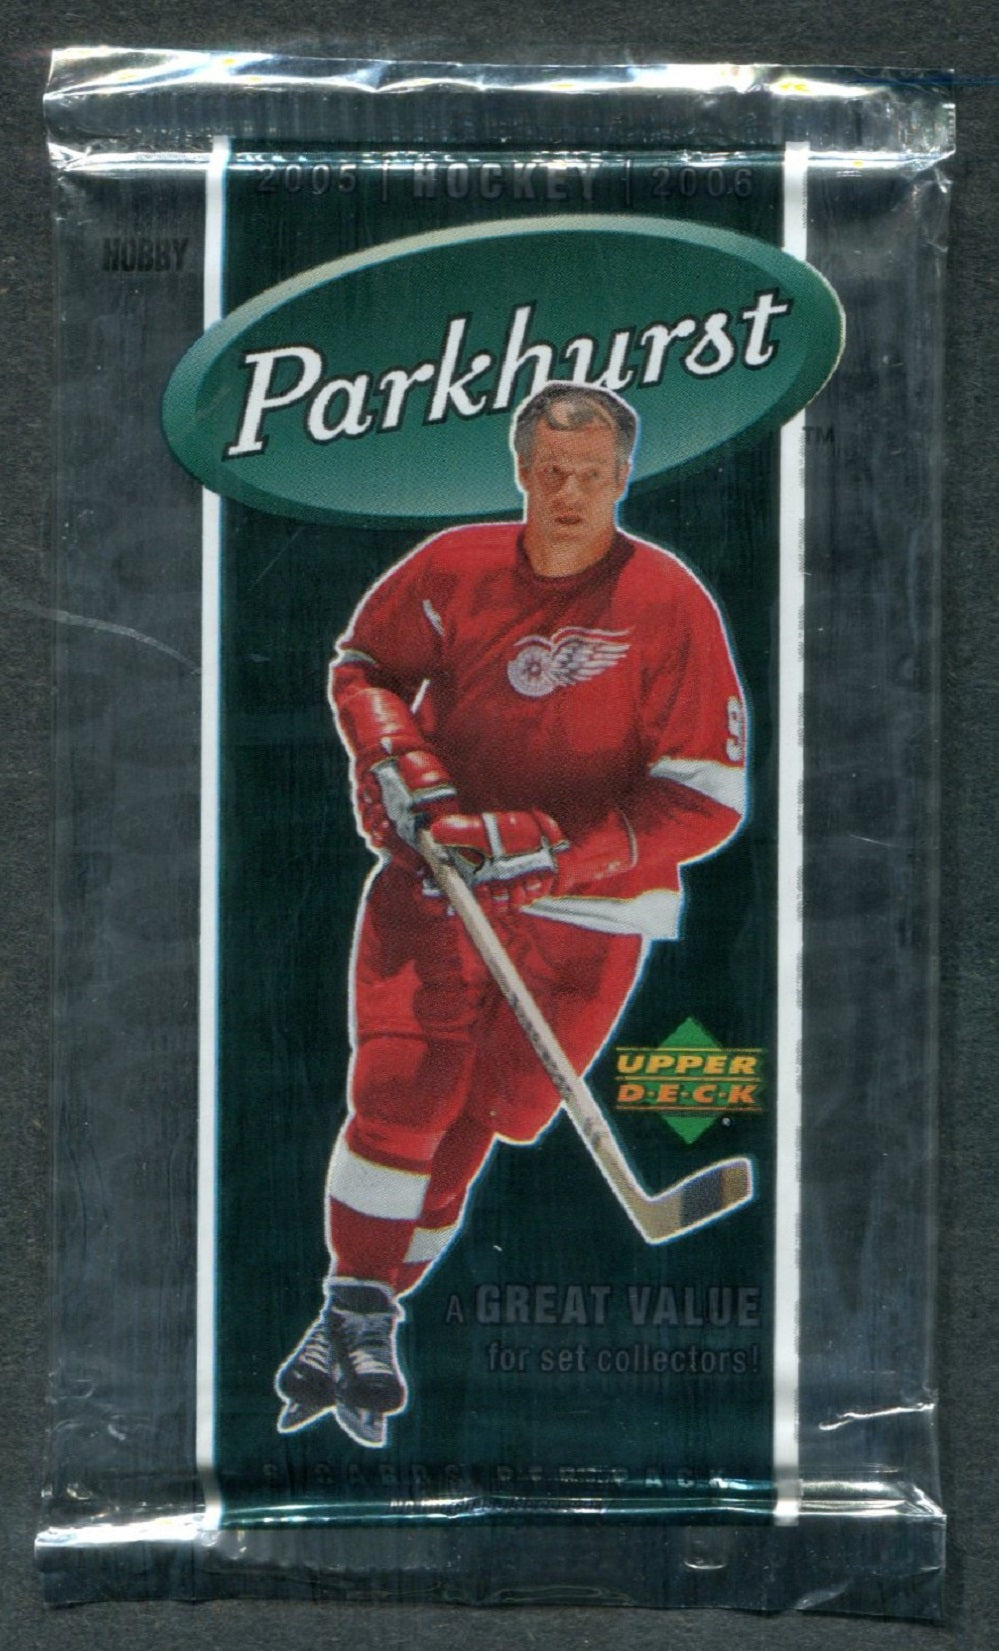 2005/06 Upper Deck Parkhurst Hockey Unopened Pack (Hobby)